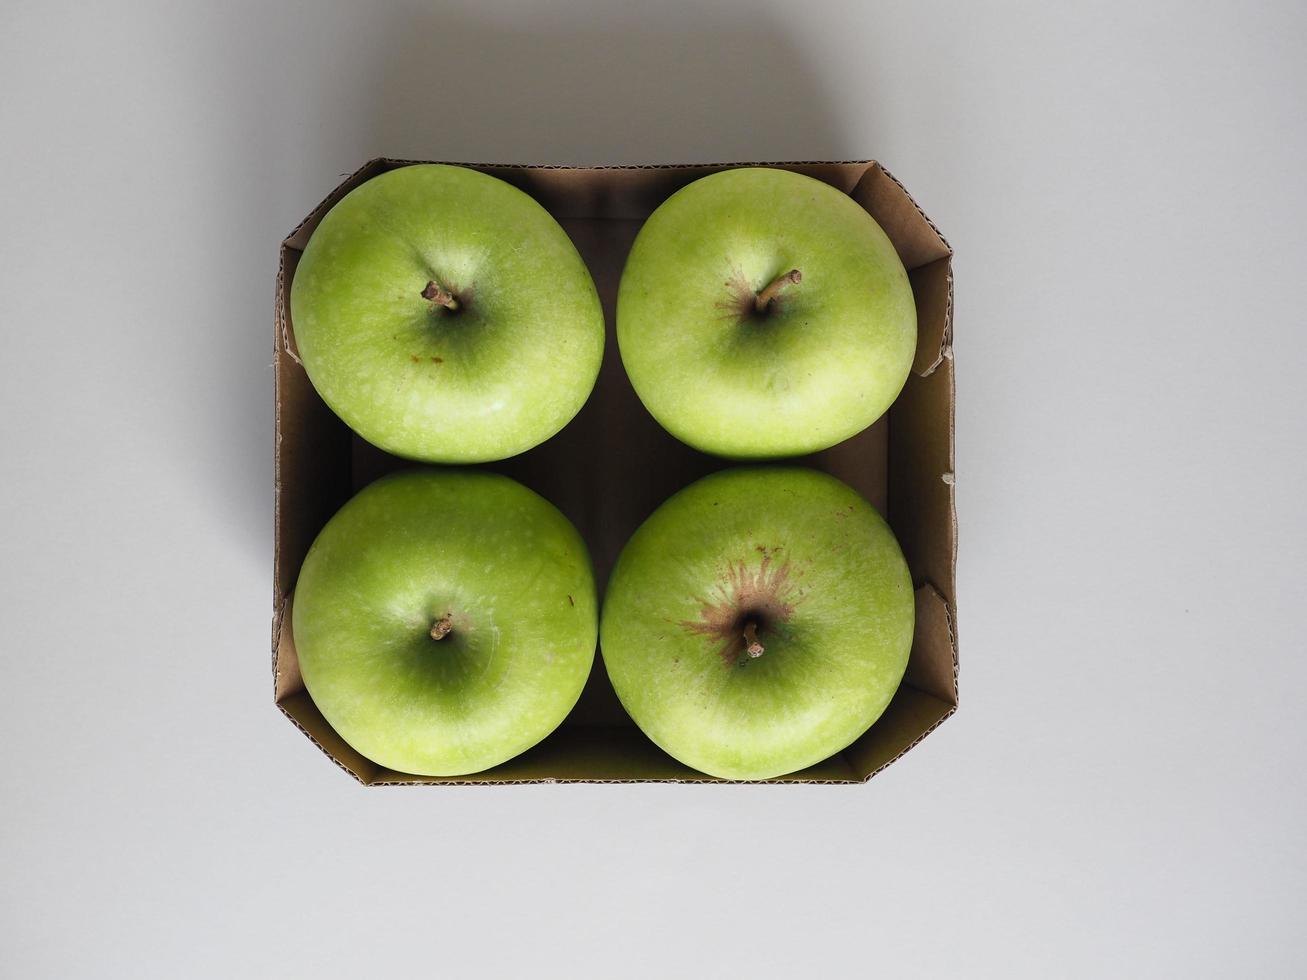 comida de fruta maçã vovó smith na cesta de papelão foto